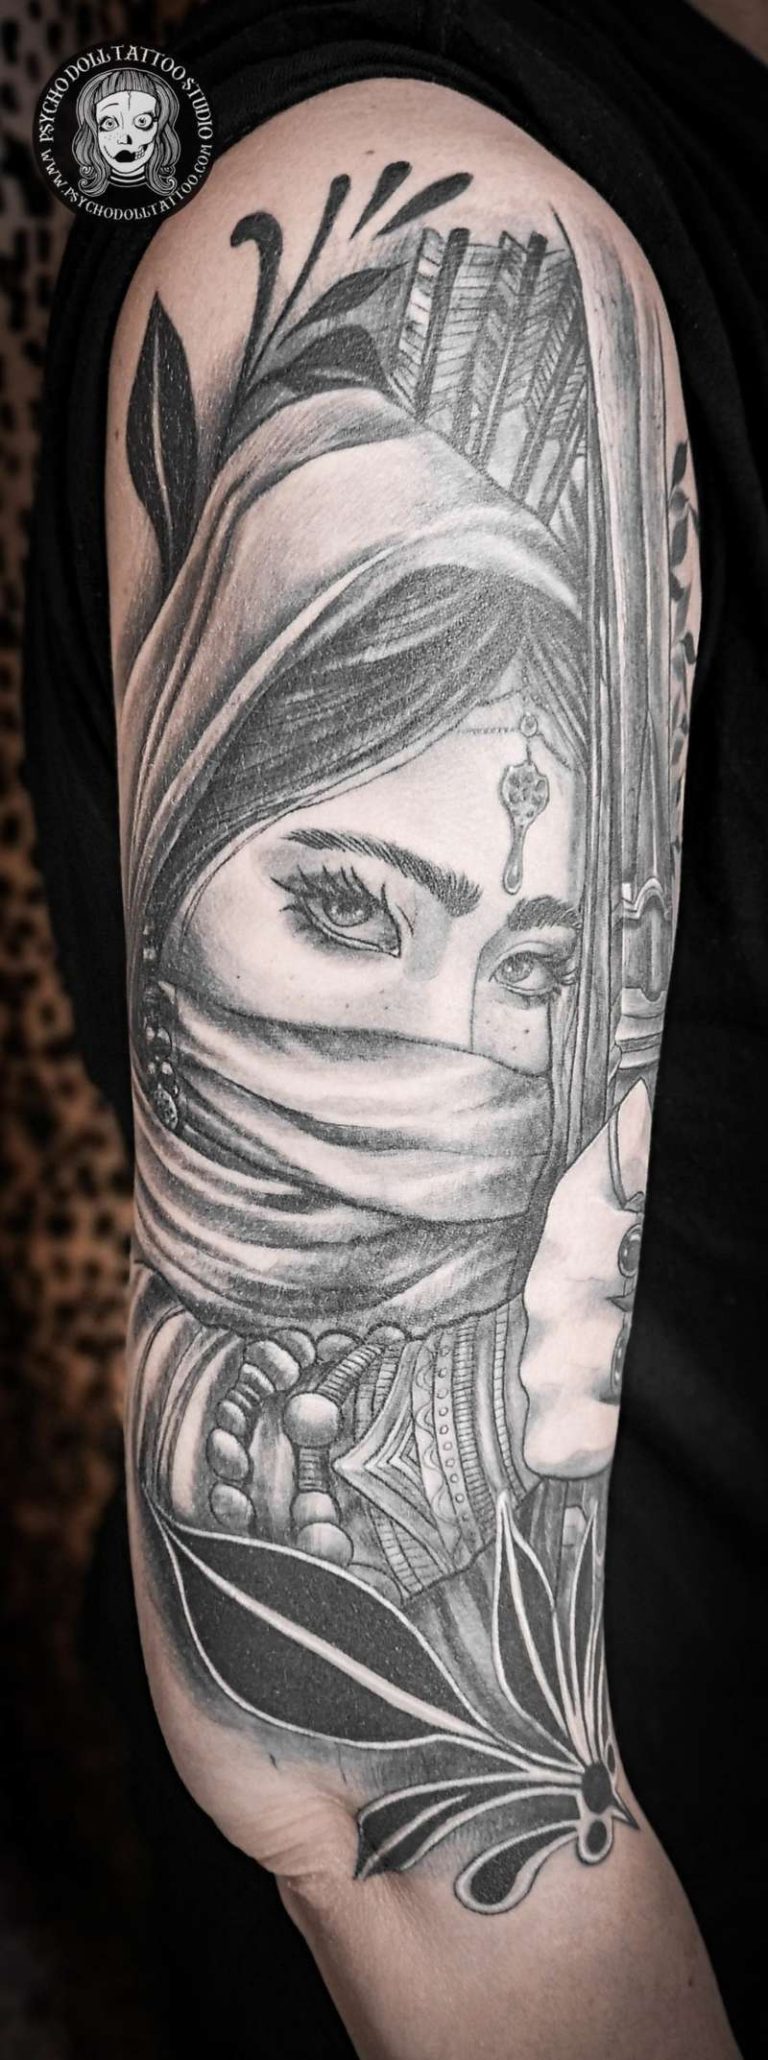 Tatuaggio di donna guerriera con fiocco